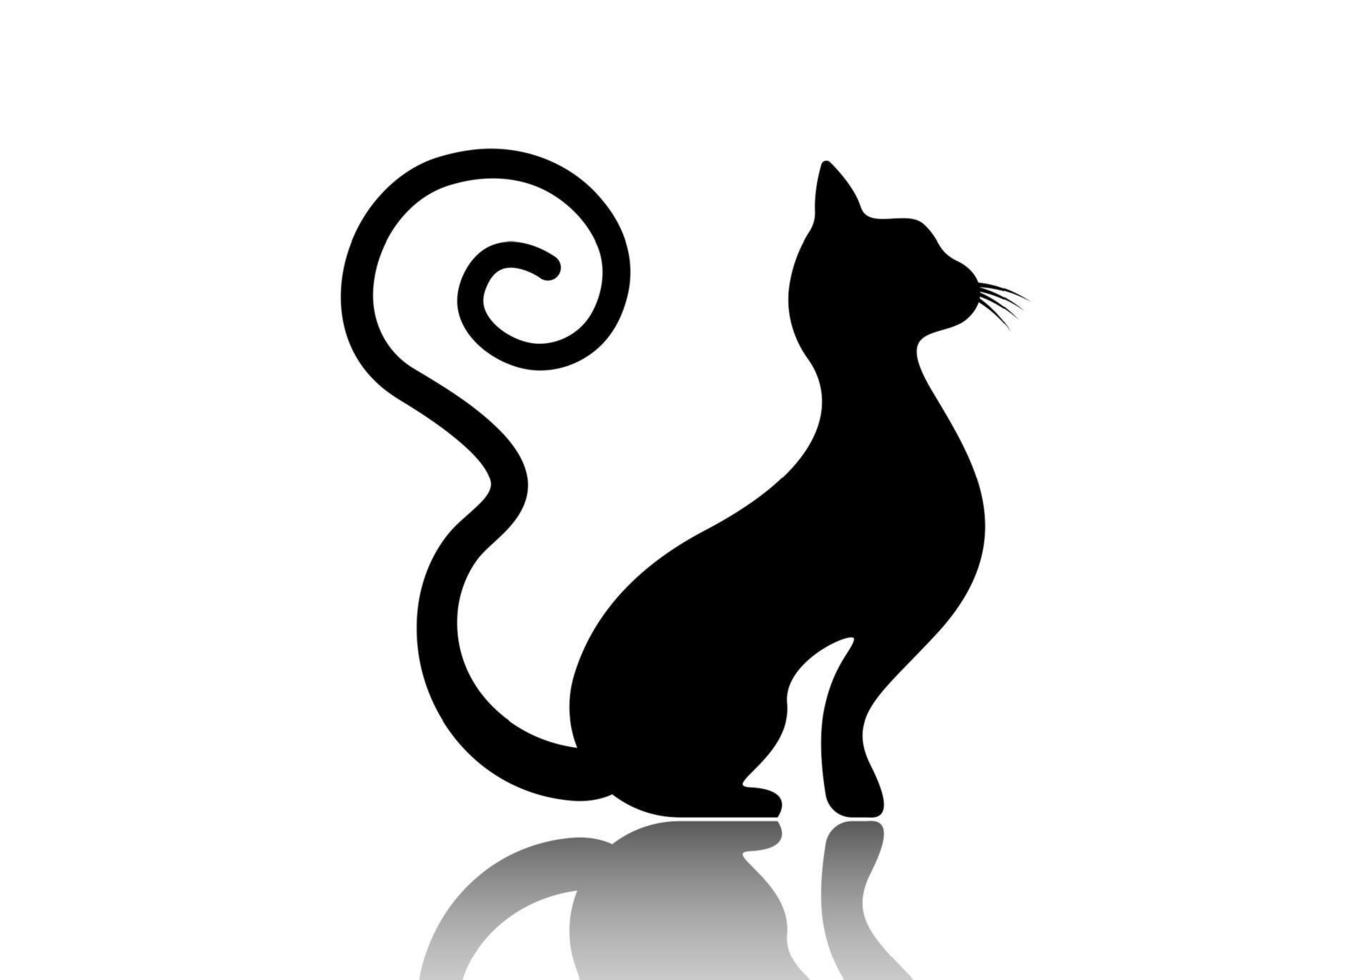 zwarte kat silhouet met gekrulde staart, katachtig dier logo sjabloon, vectorillustratie geïsoleerd op een witte achtergrond vector